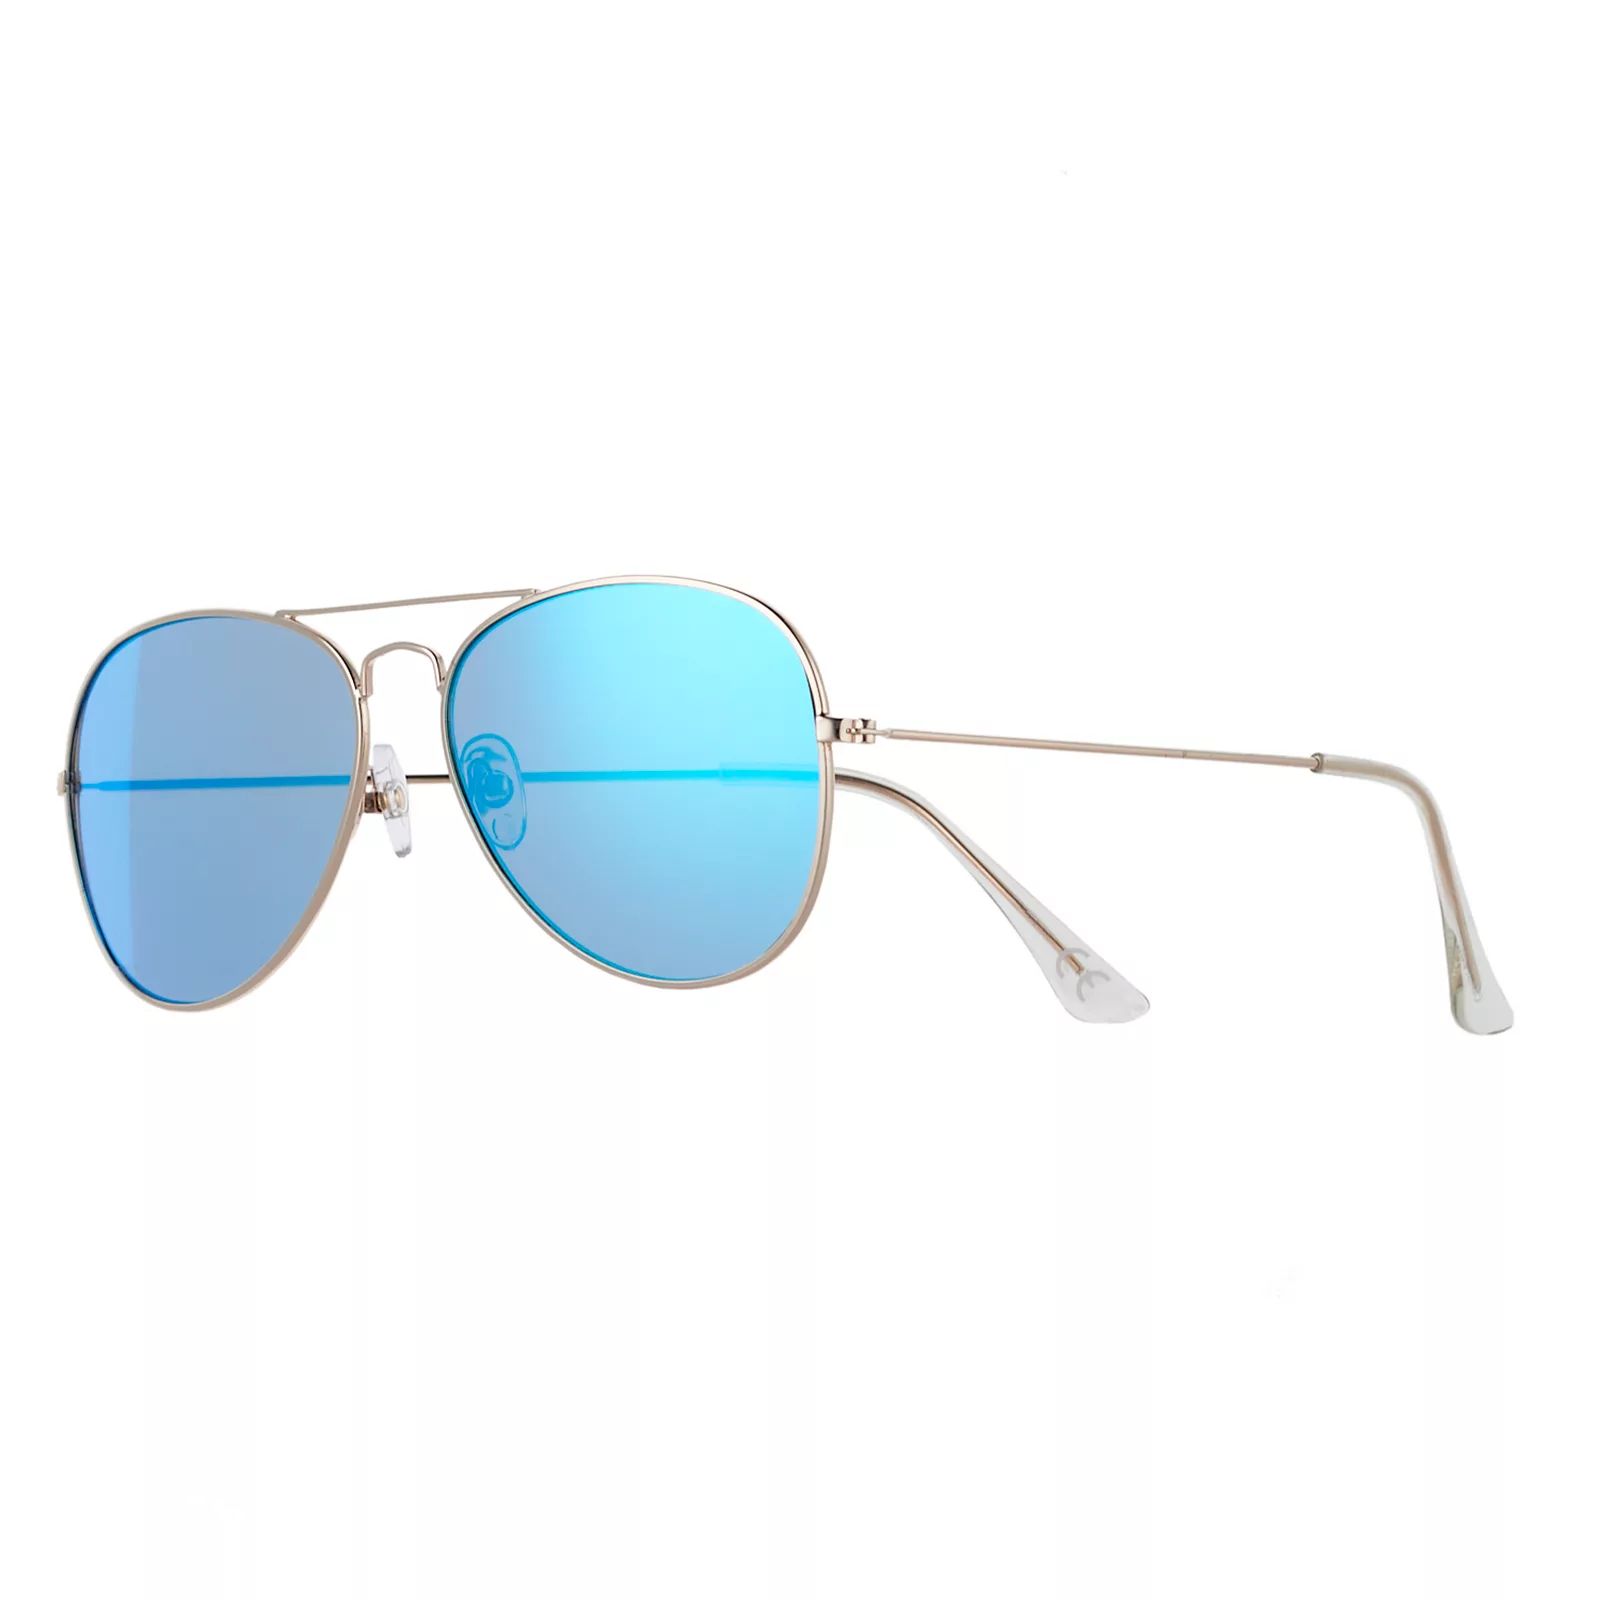 Men's Apt. 9 Aviator Sunglasses, Size: Medium, Med Green | Kohl's